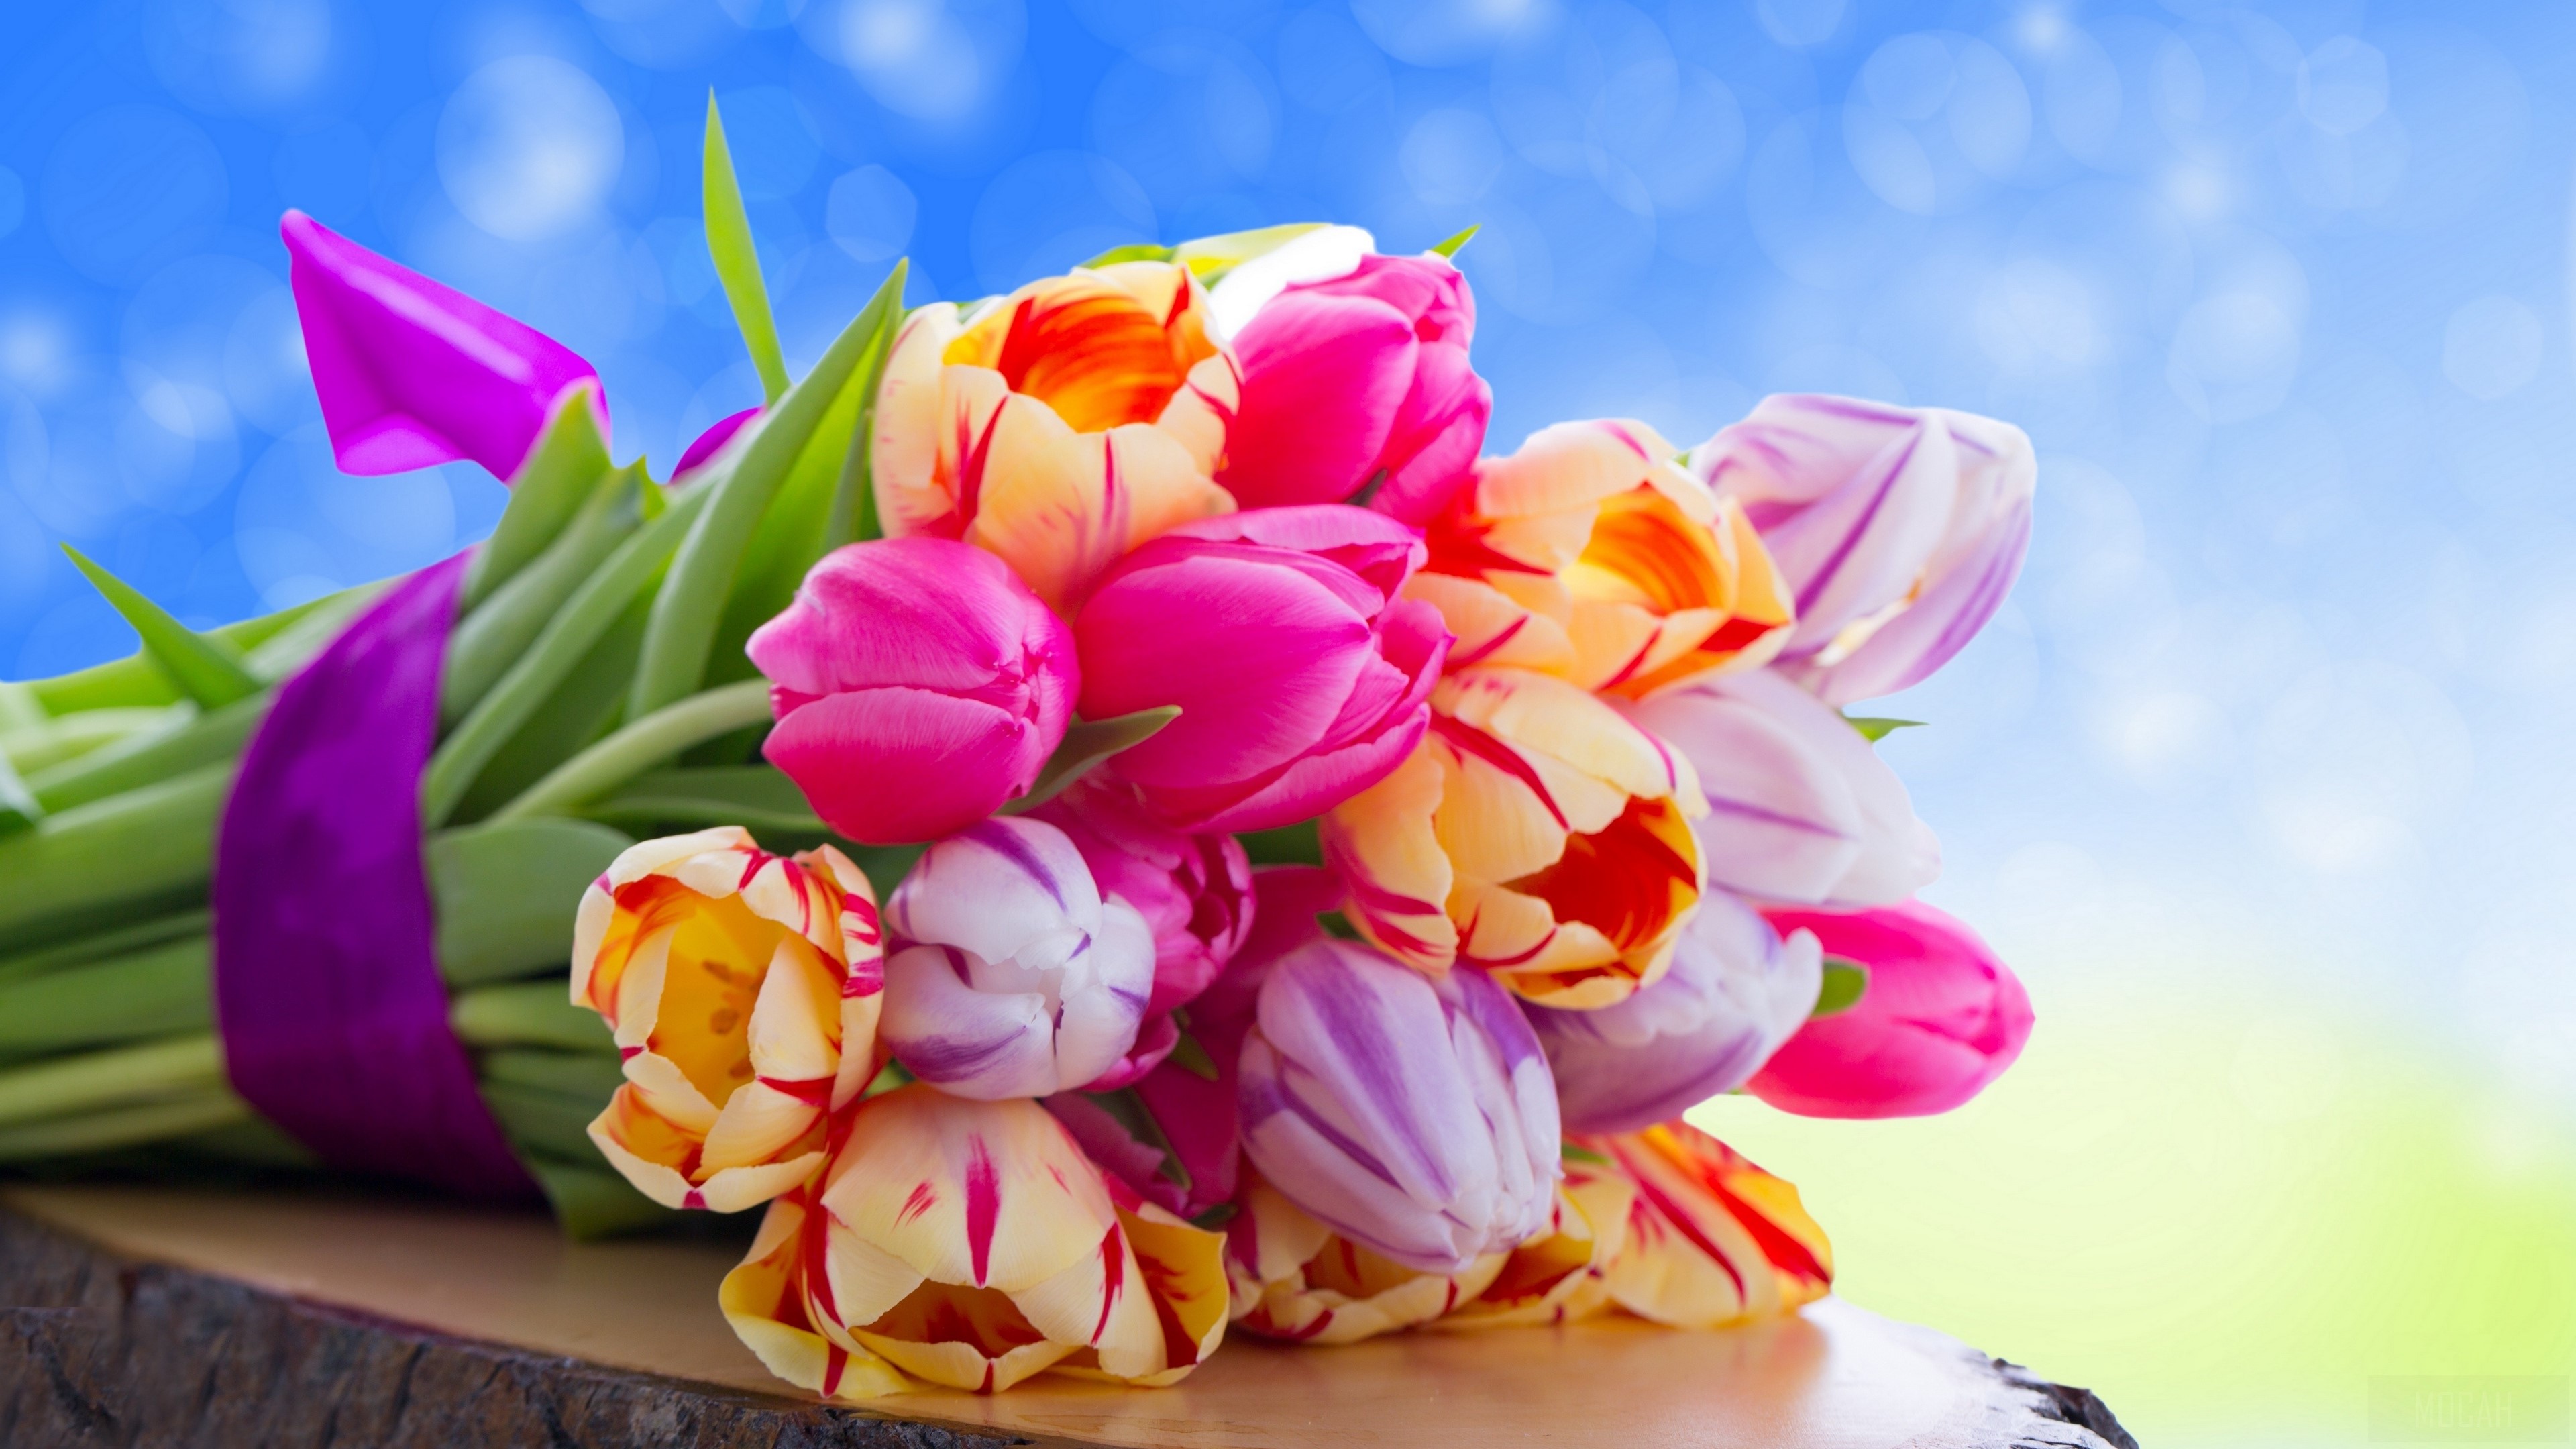 tulips, flowers, bouquet 4k Gallery HD Wallpaper